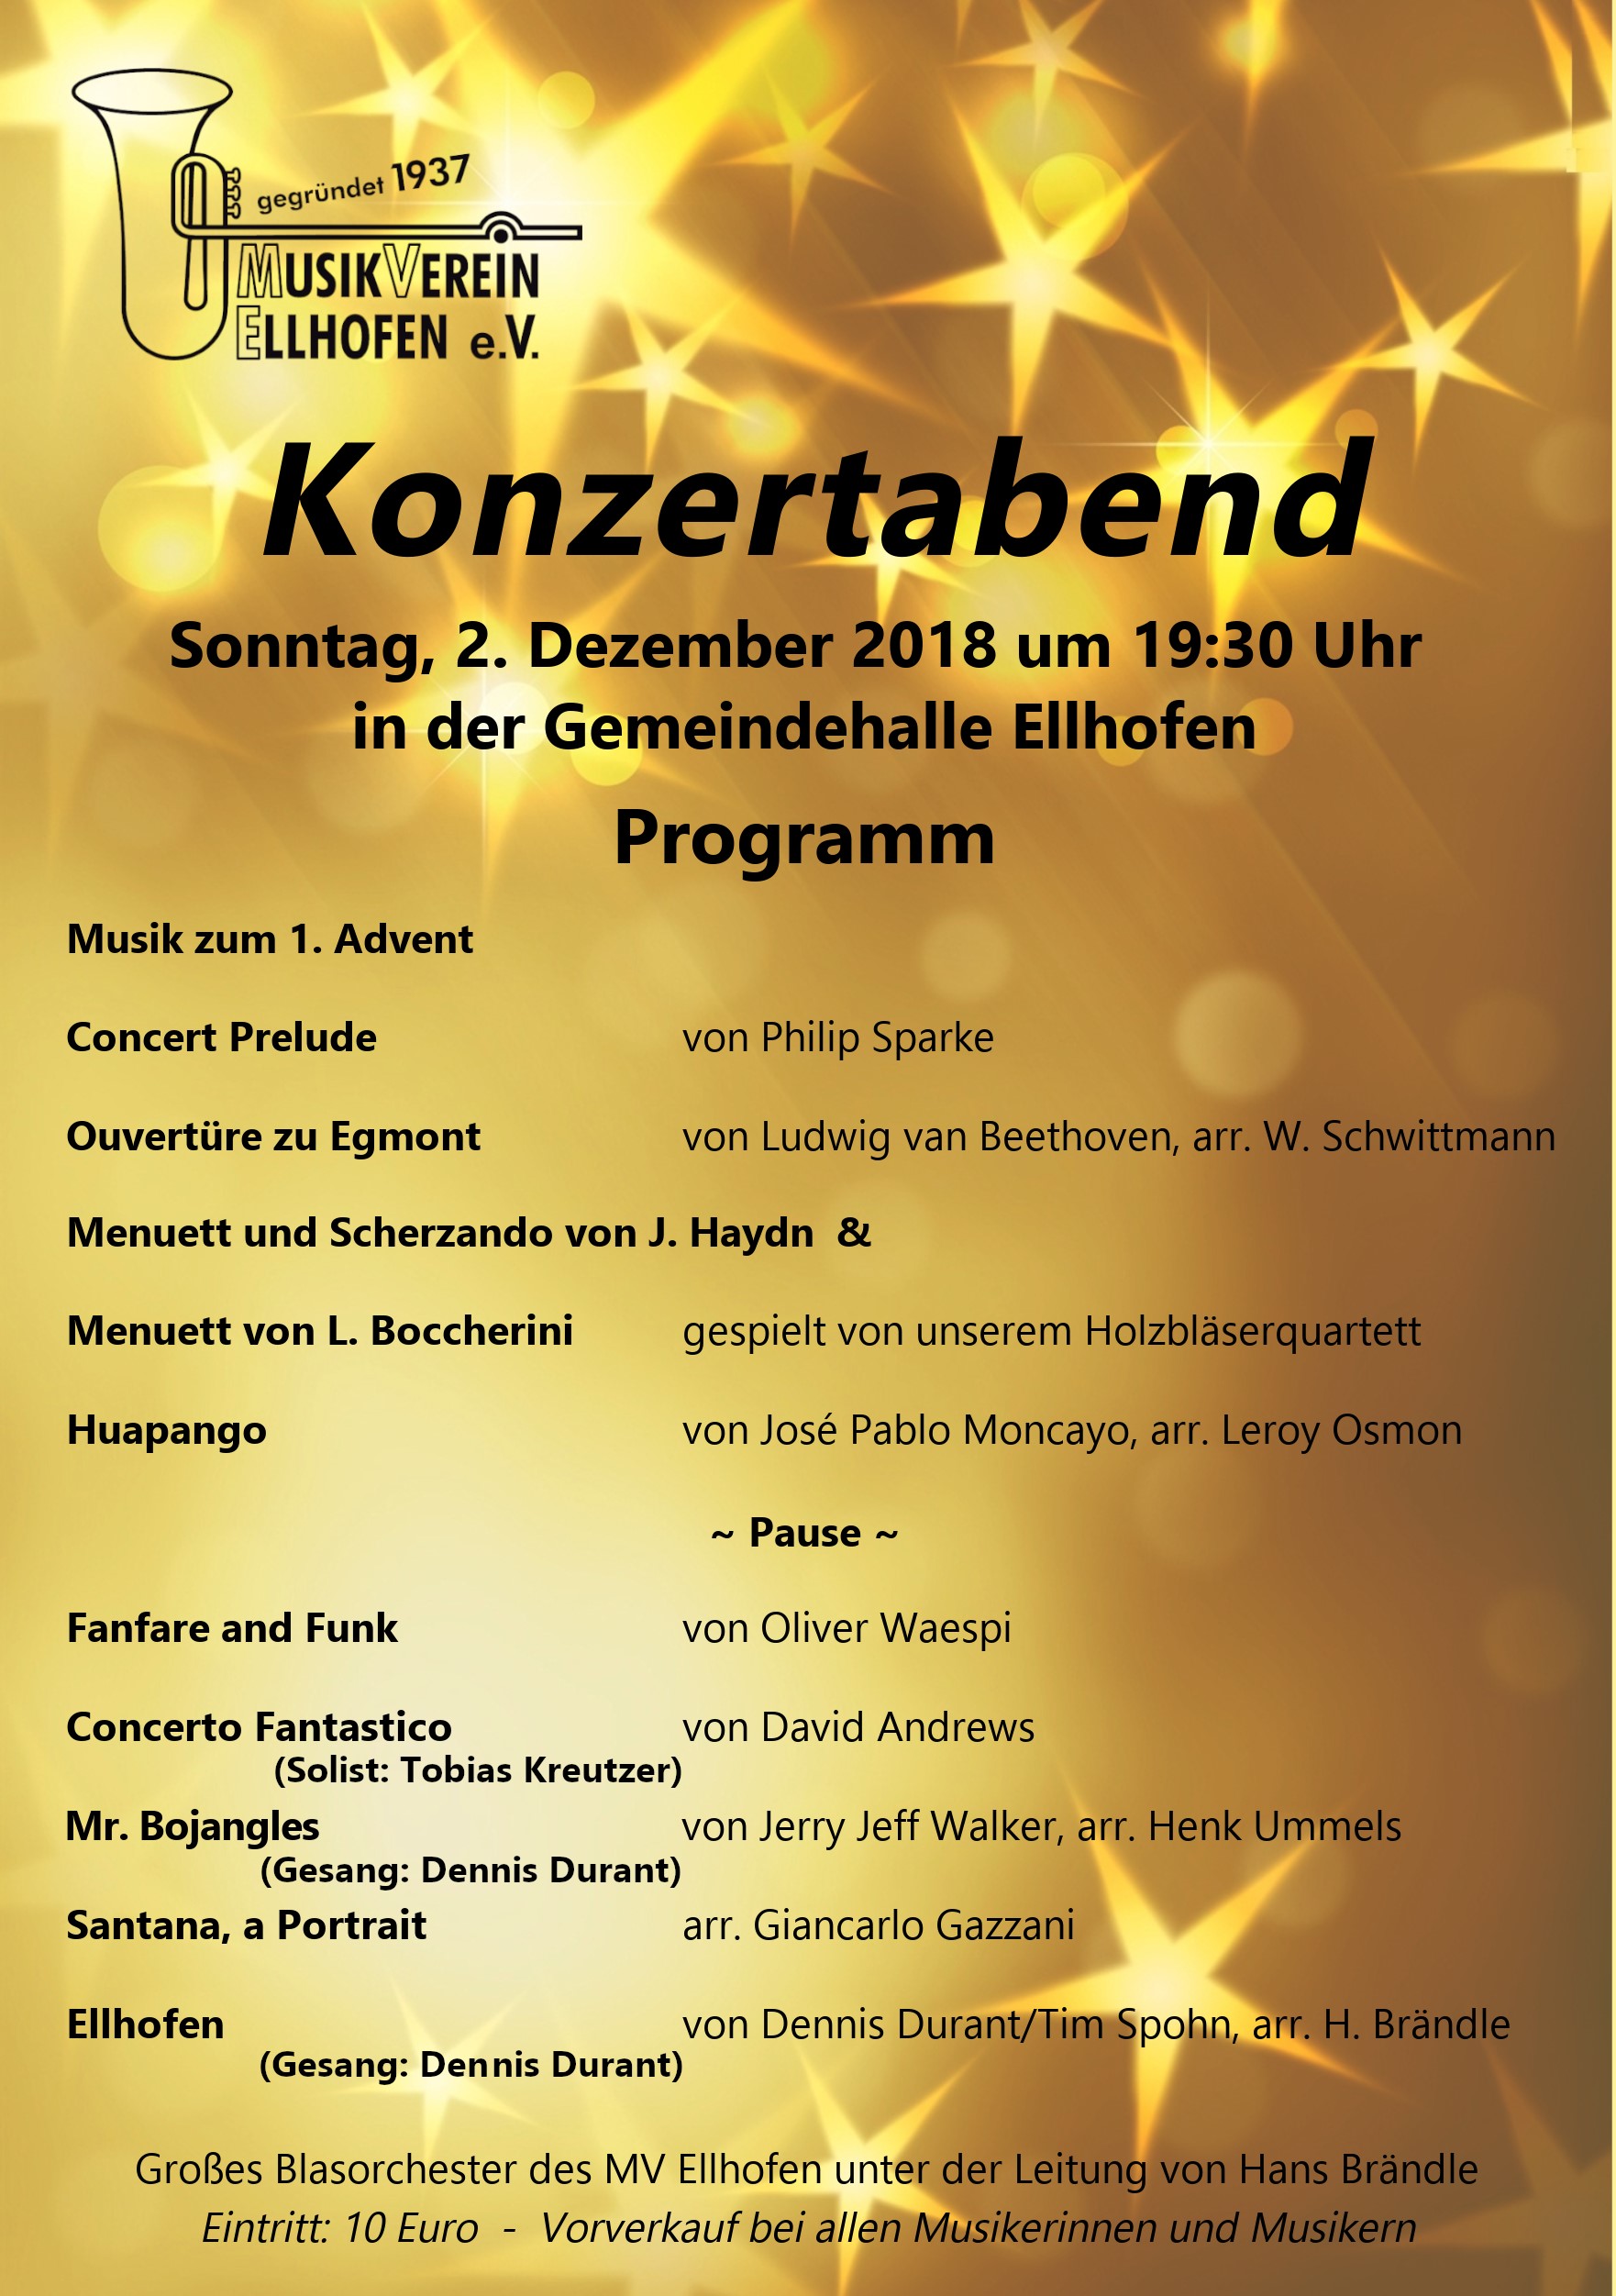 Konzertabend Musikverein Ellhofen am 02.12.2018